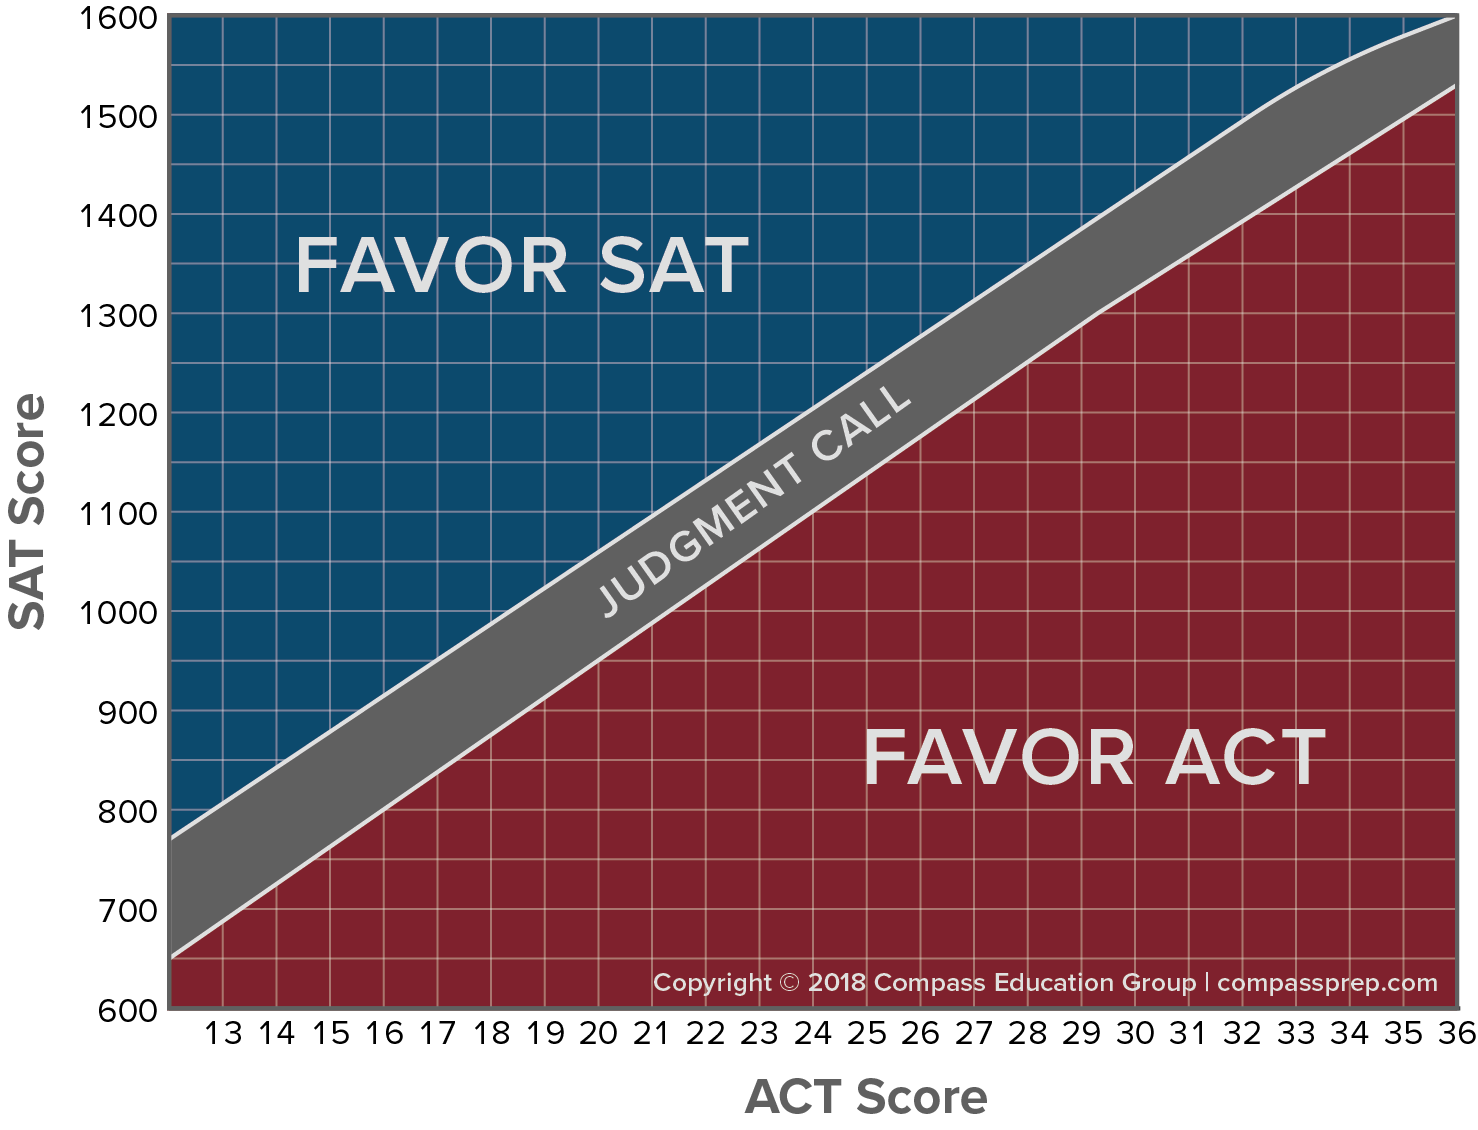 Act Sat Conversion Chart